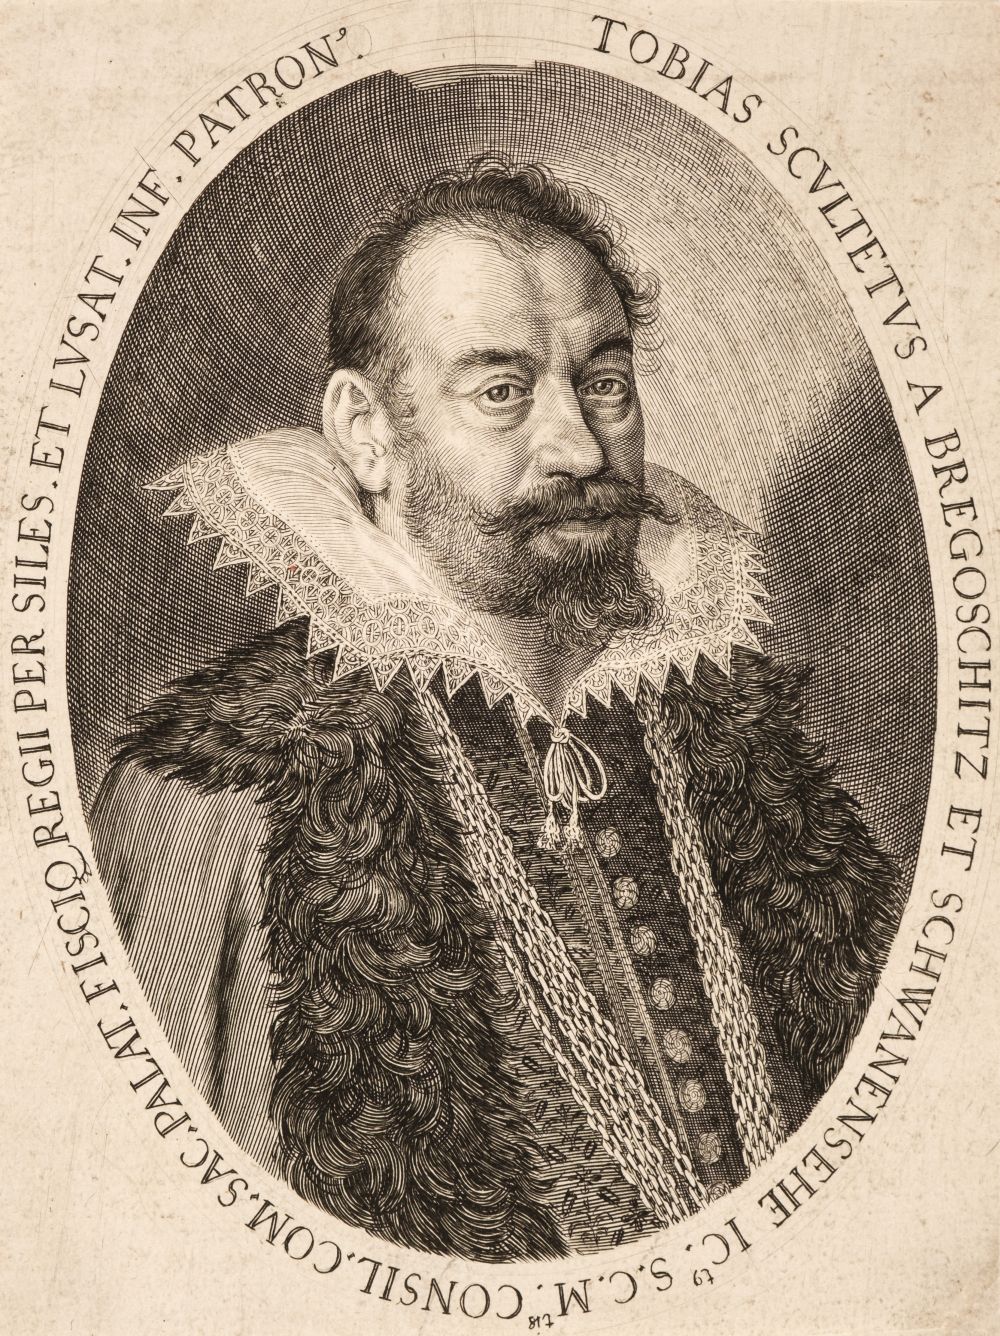 Sadeler II (Aegidius, 1570-circa 1629). Portrait of Tobias Scultetus, 1610, engraving